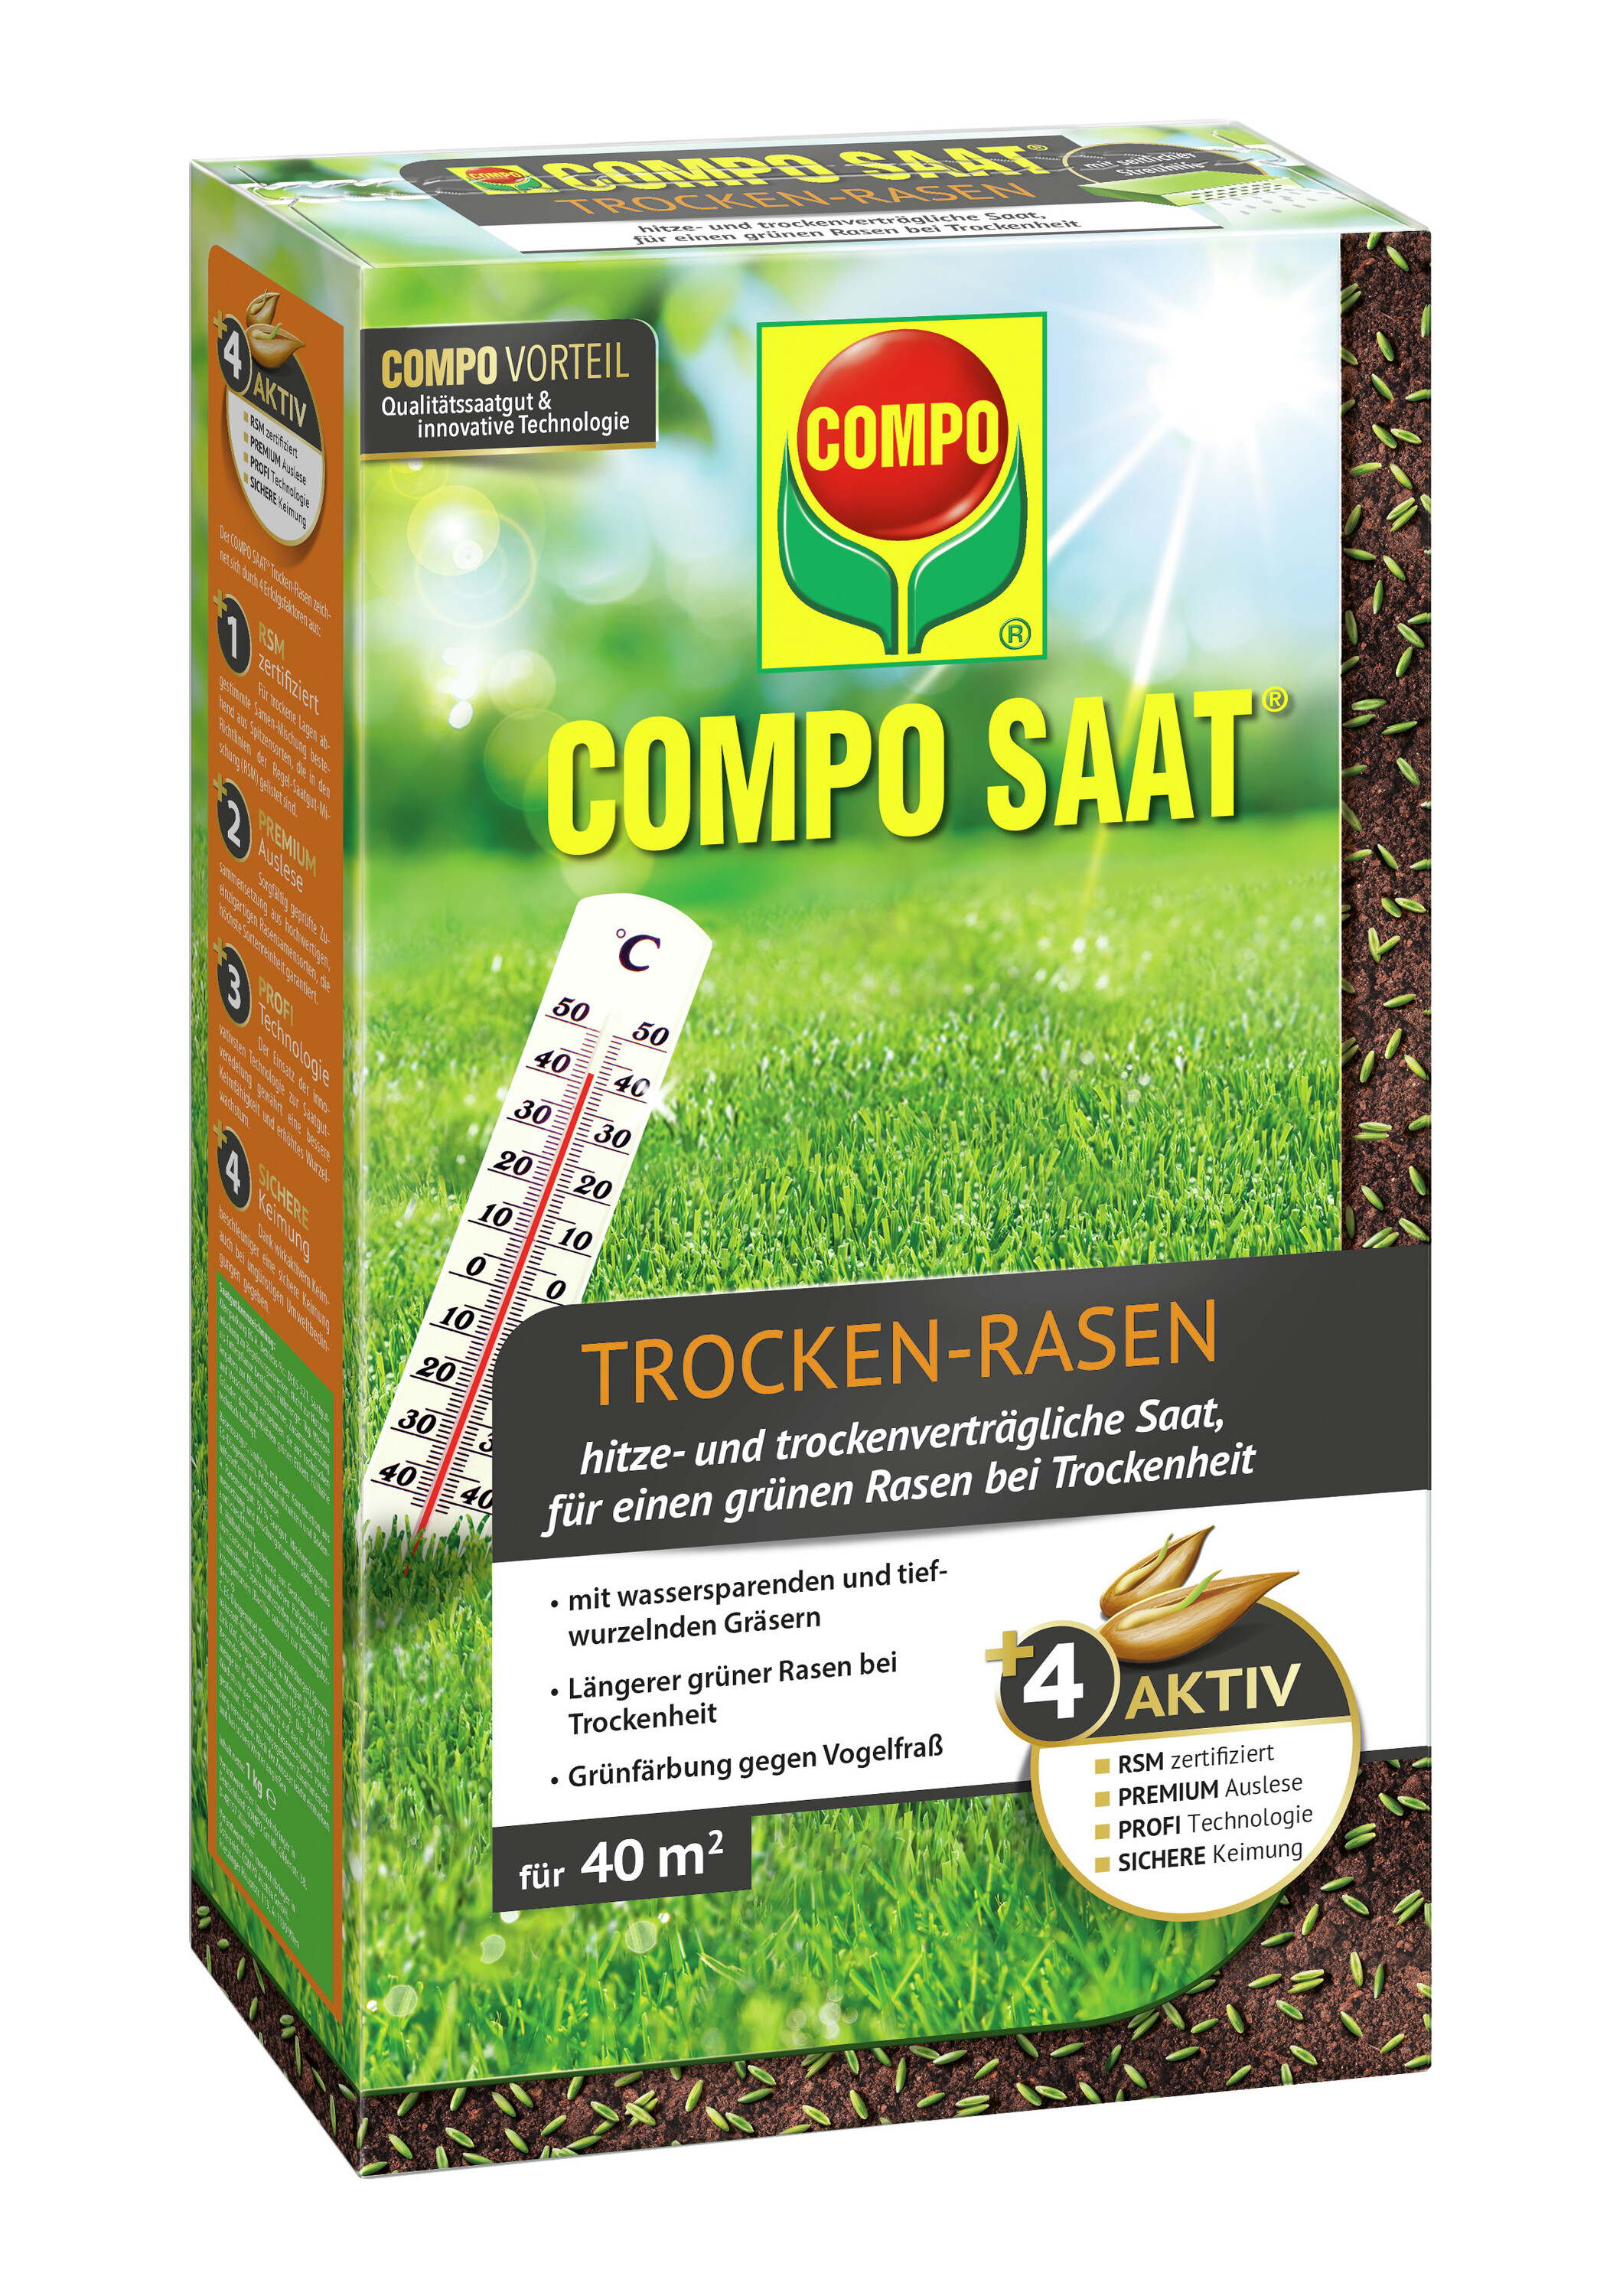  COMPO SAAT Trocken-Rasen für 40 qm, 1kg